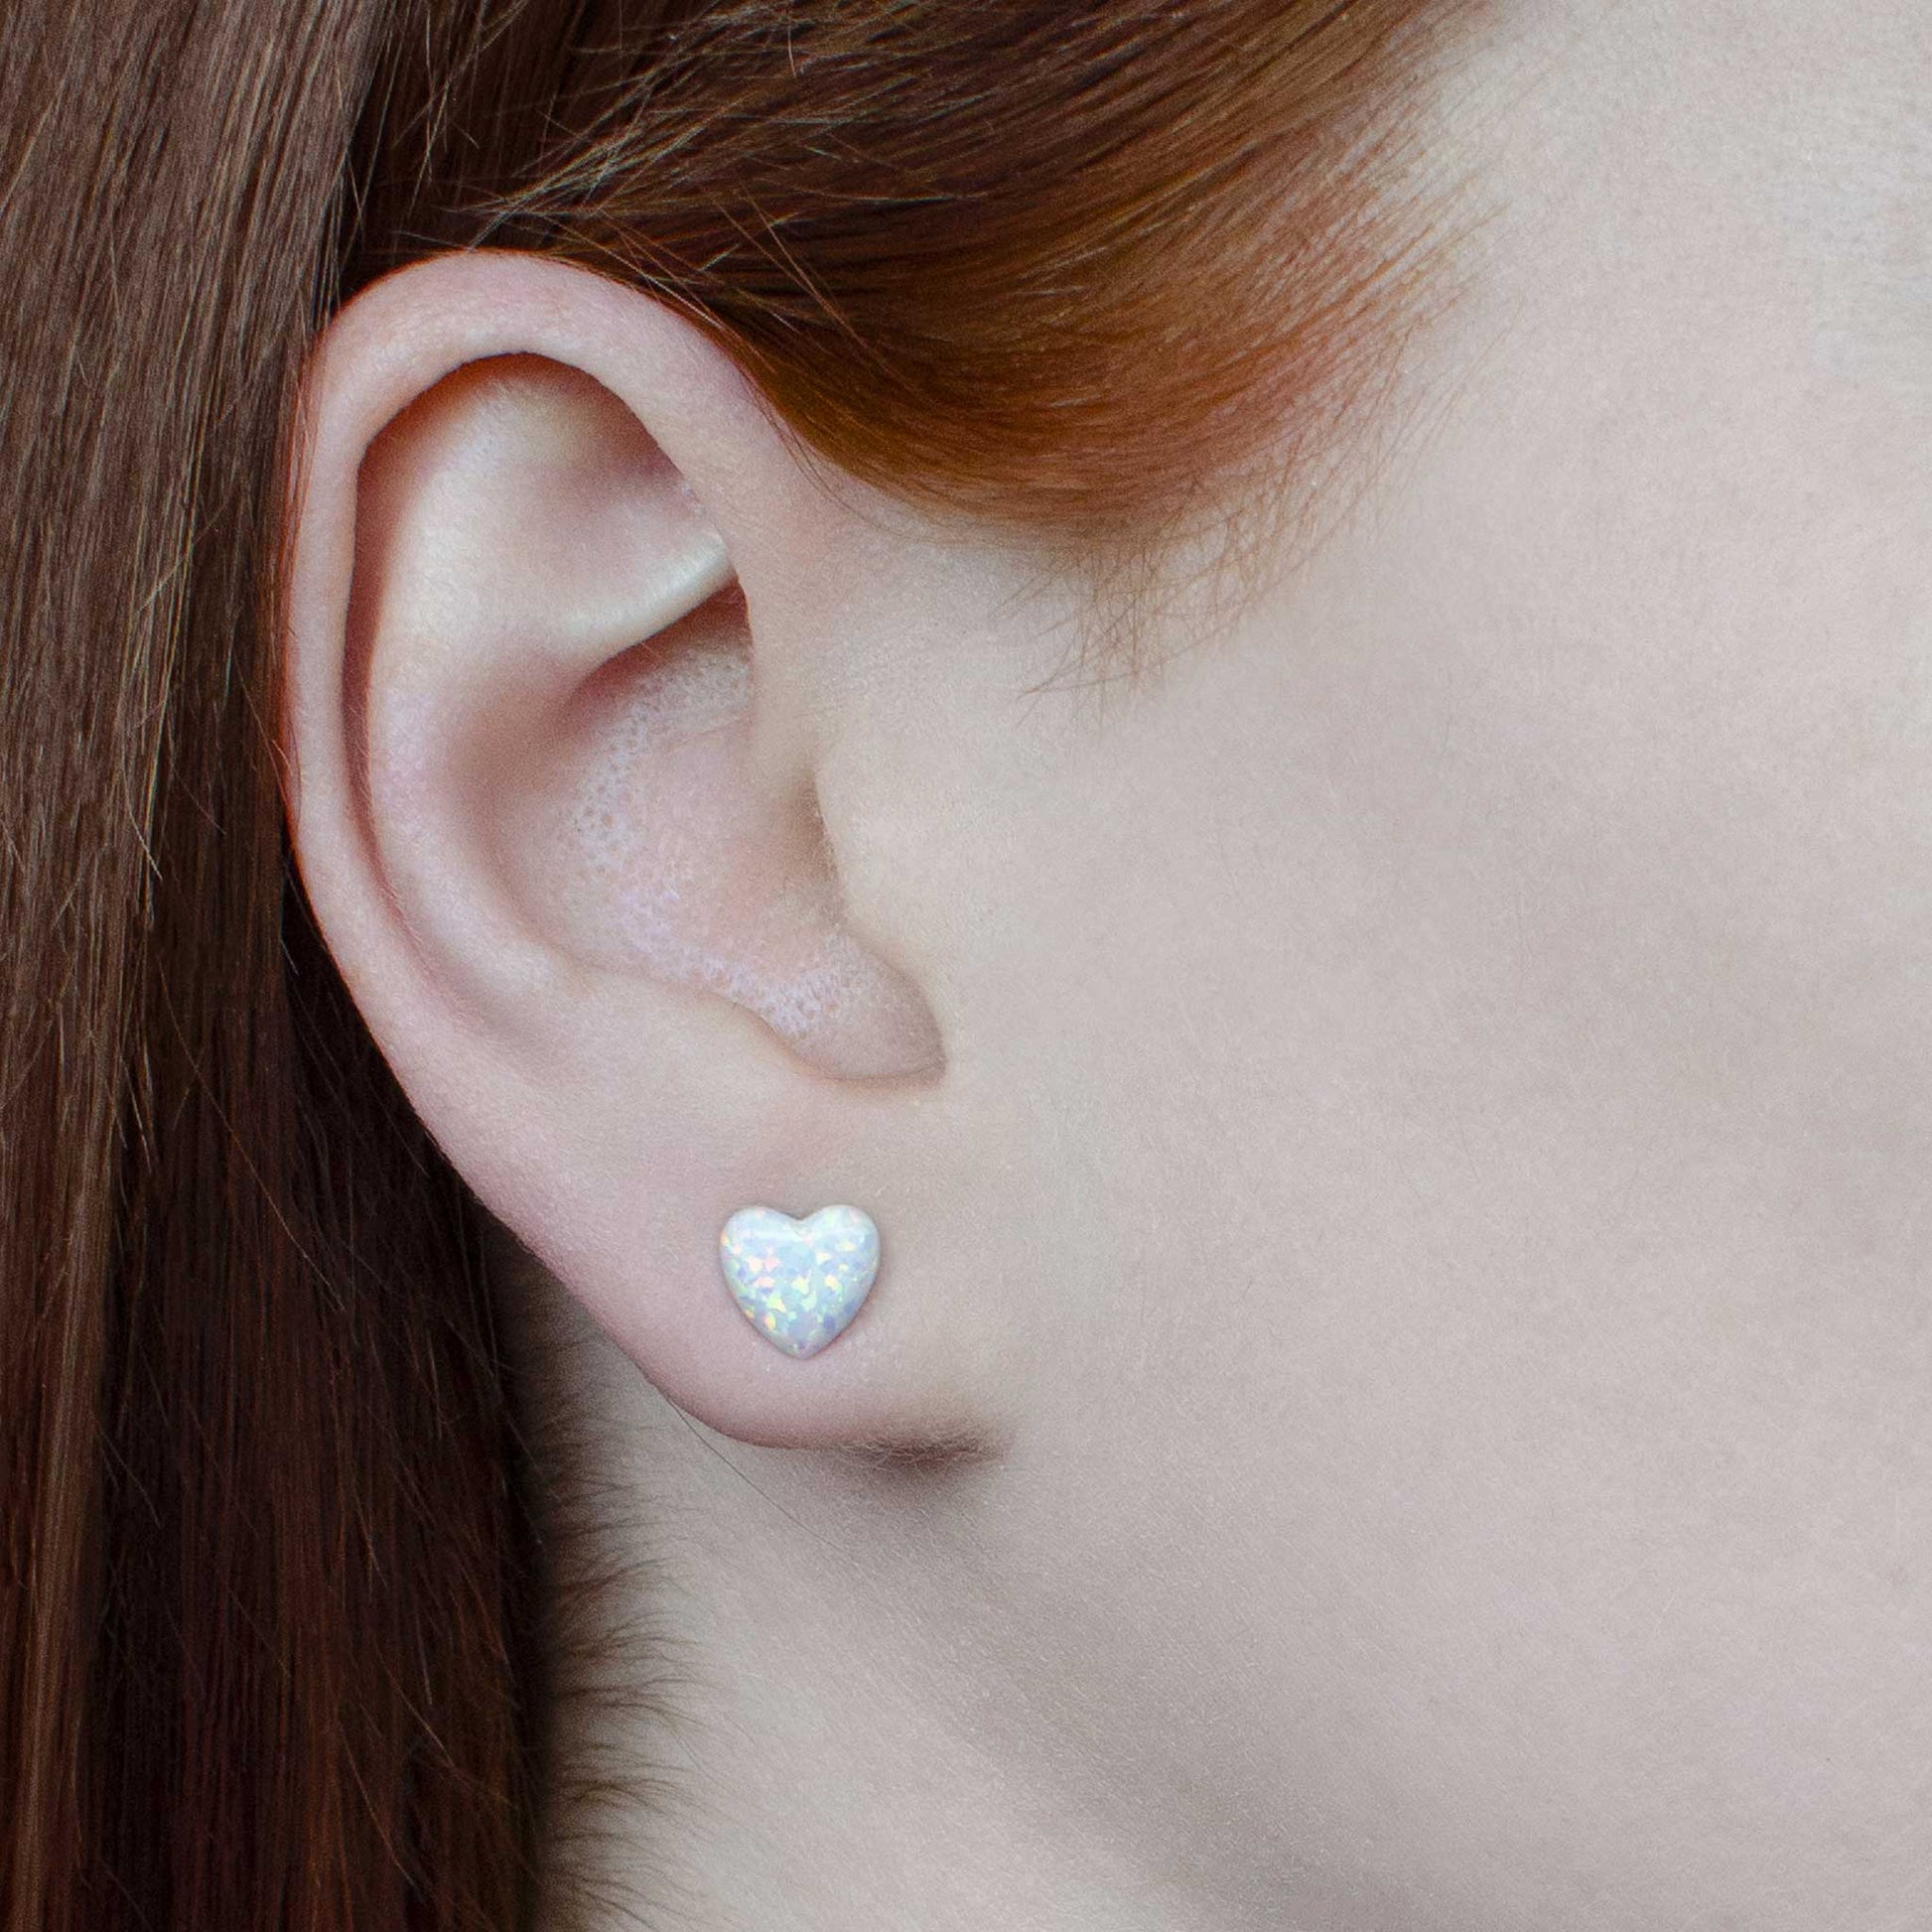 Woman wearing white Opal heart studs in earlobe